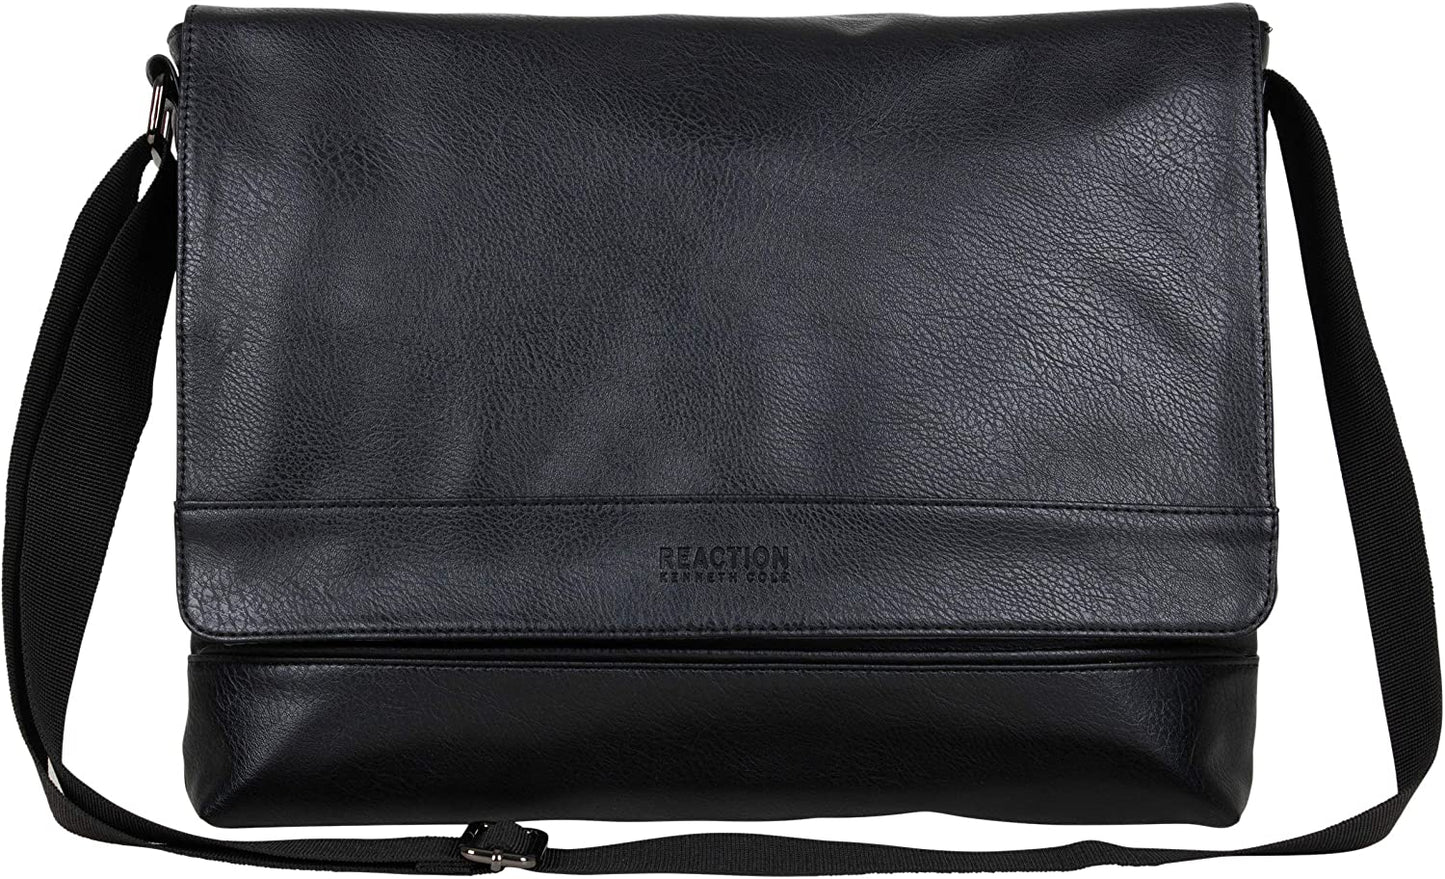 Kenneth Cole REACTION Grand Central Vegan Leather Bag Laptop & Tablet Crossbody Travel Shoulder Case, Black Laptop Messenger, 15"